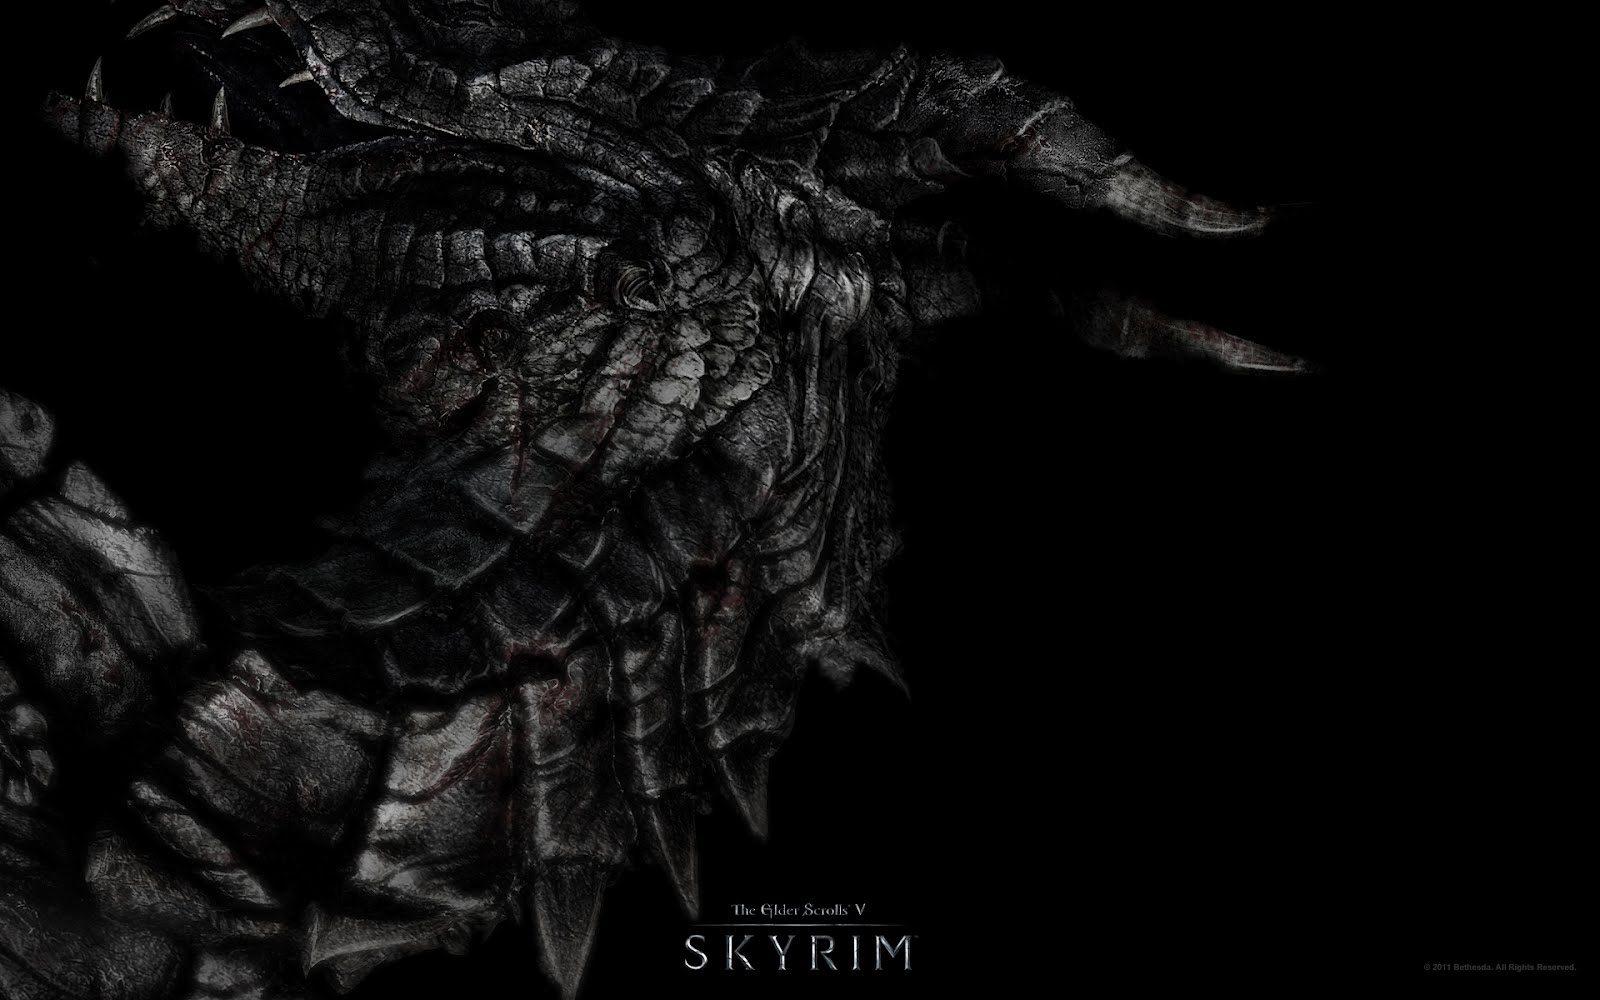 Skyrim Dragonborn Wallpaper In HD Aksn1p3r